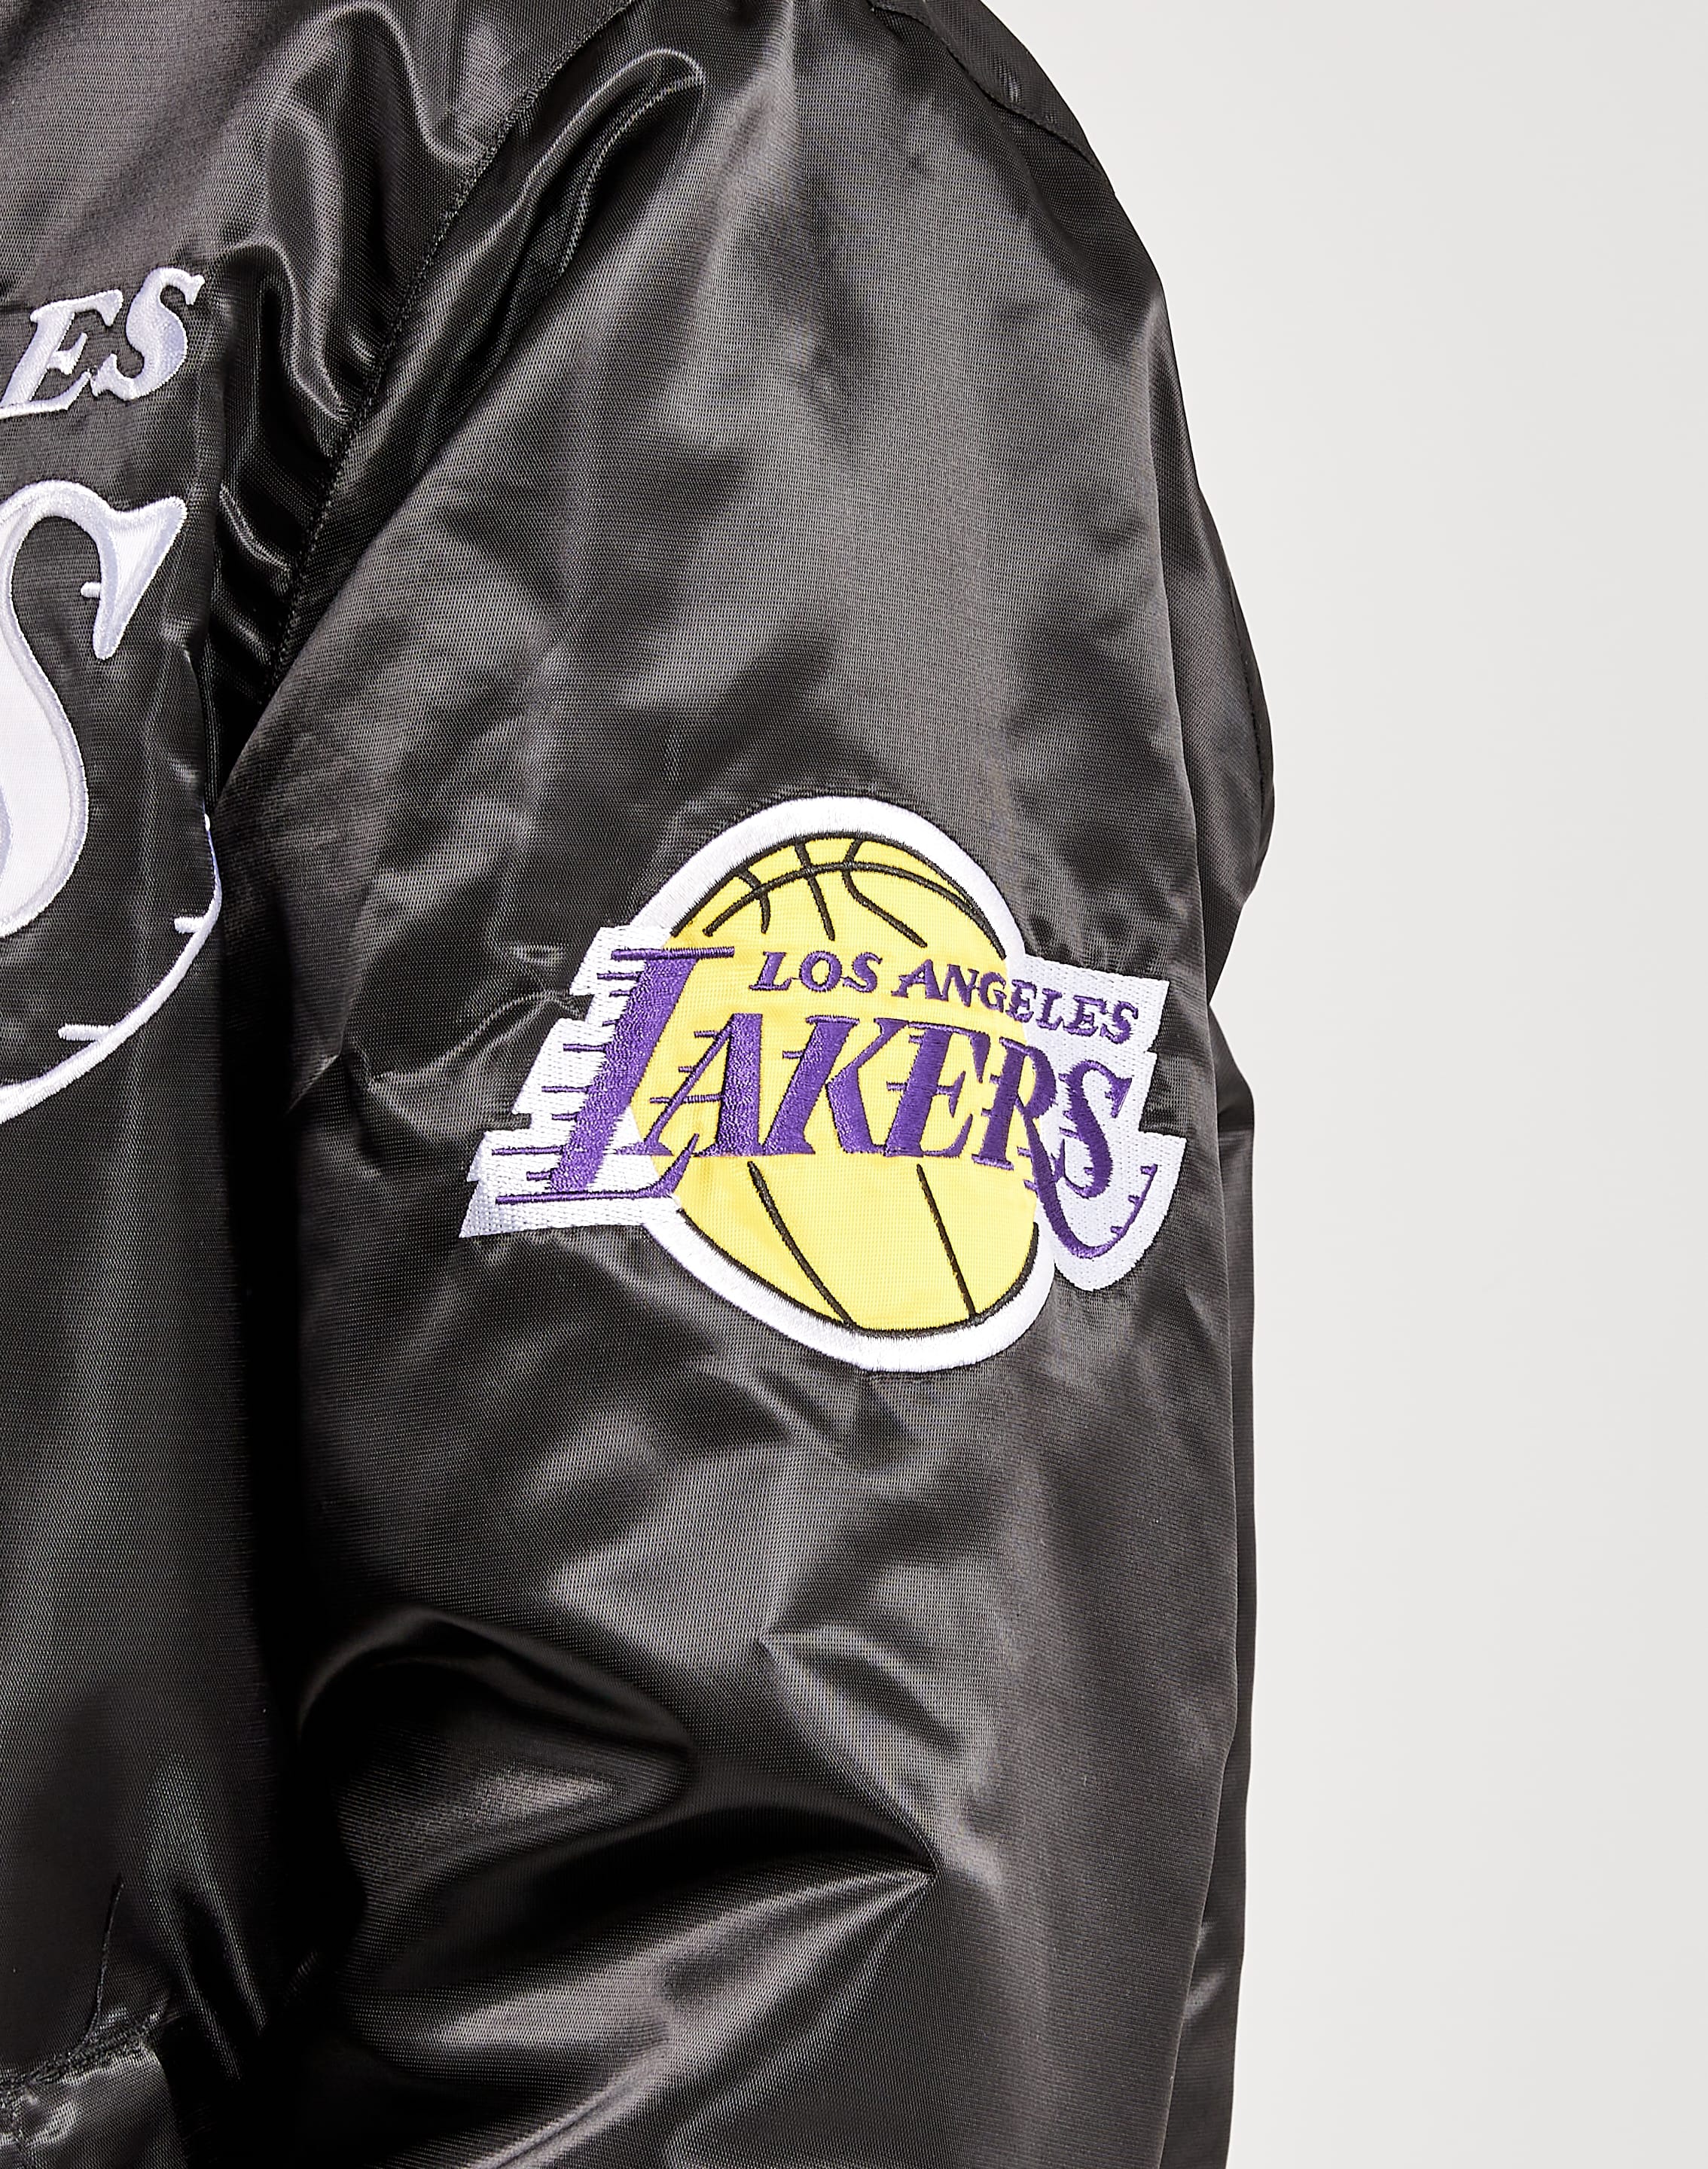 Los Angeles Lakers NBA Starter Women's Jersey